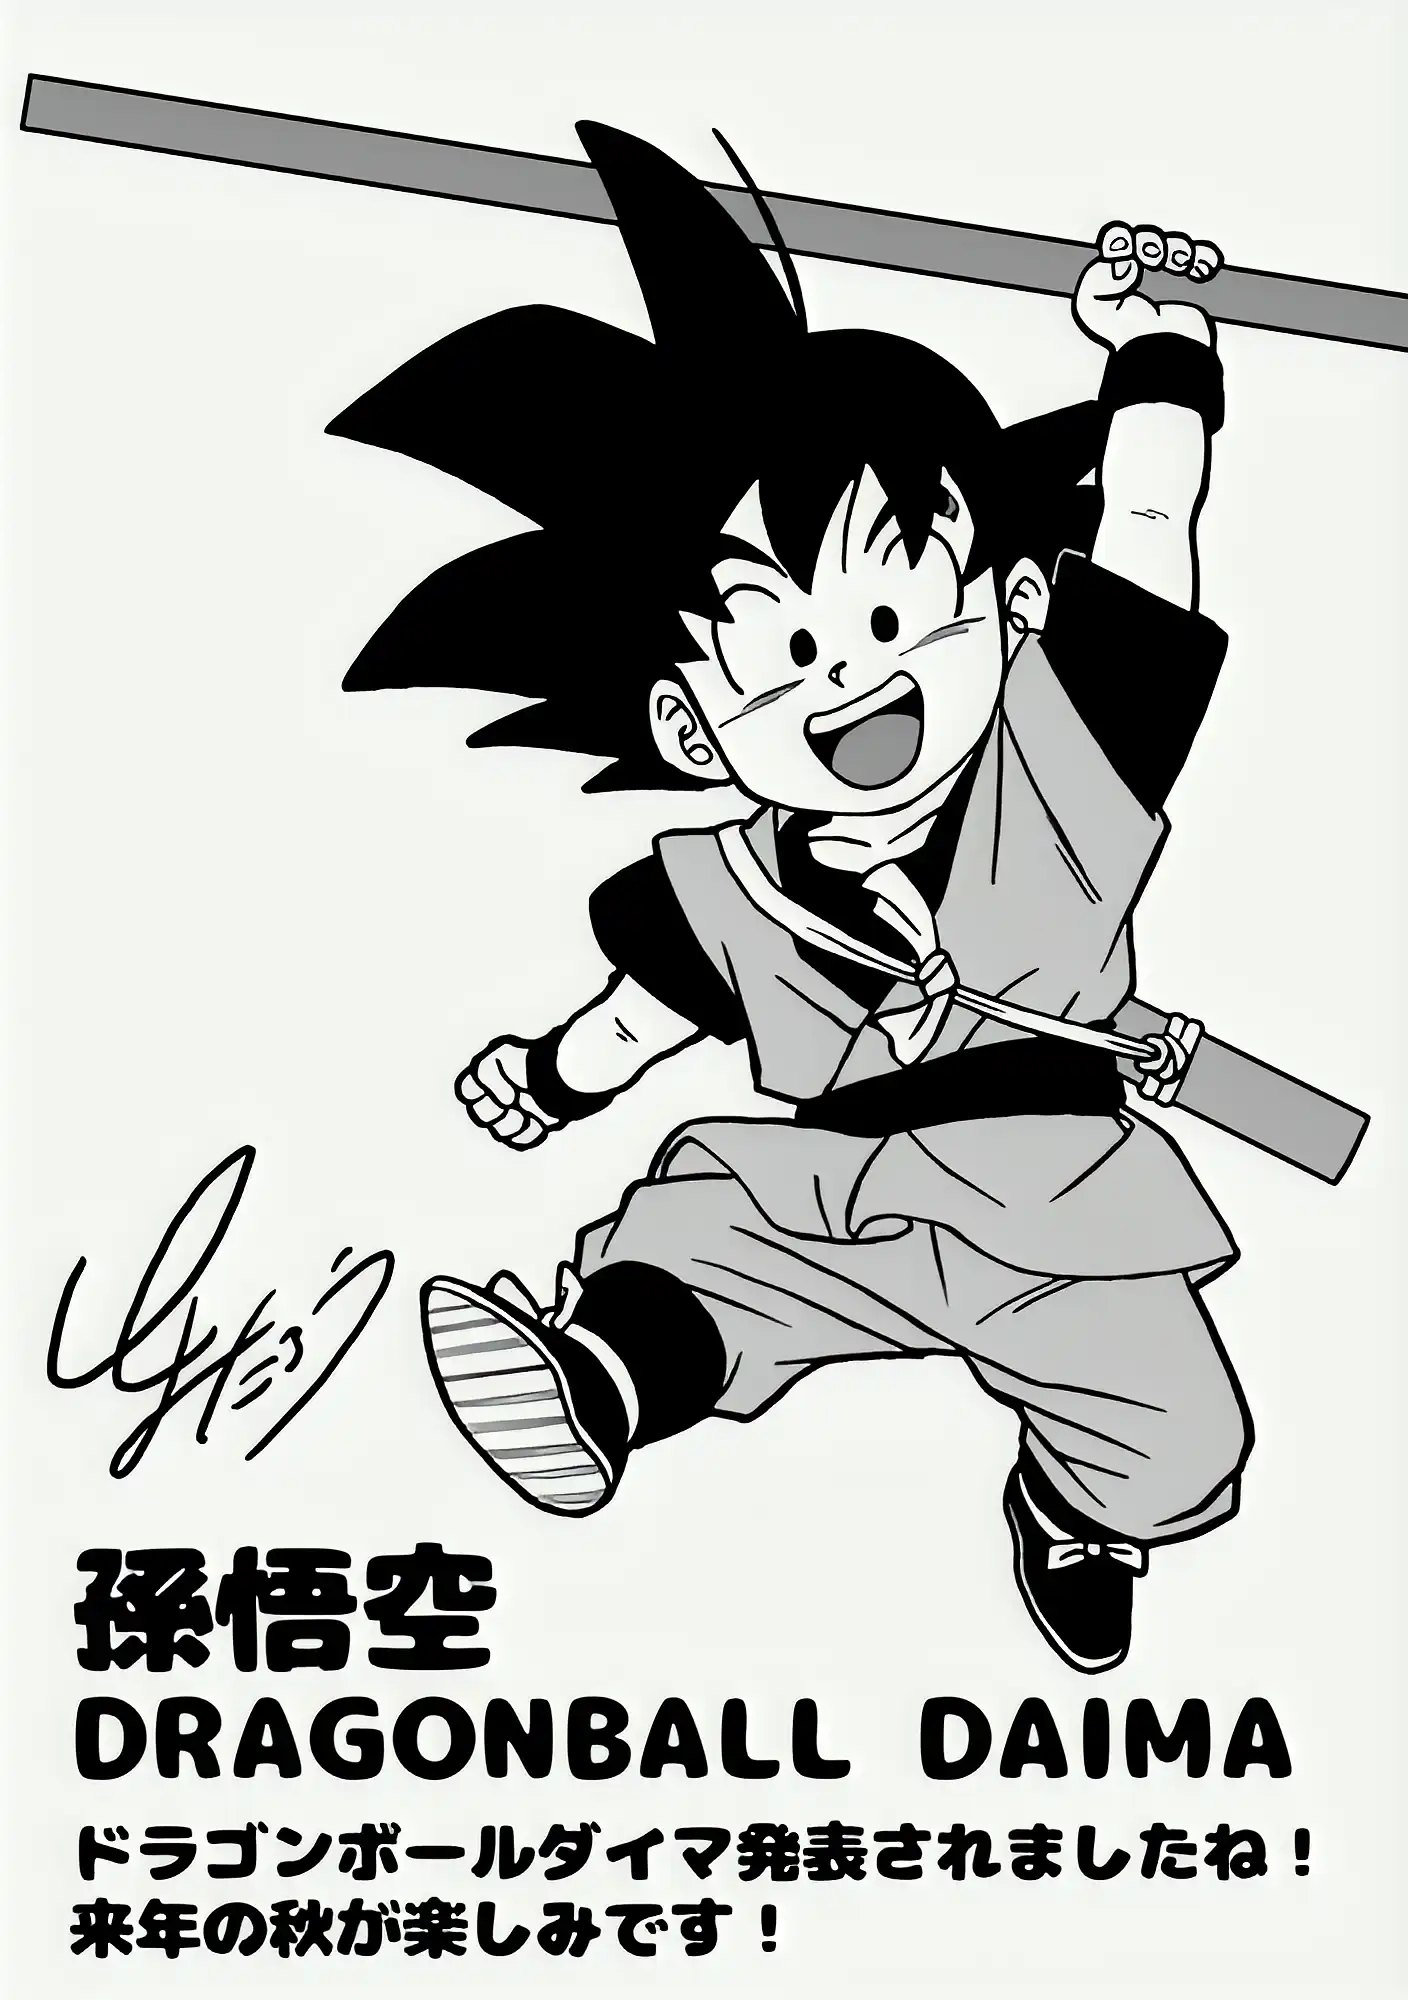 Toyotaro dévoile une nouvelle illustration de Goku pour Dragon Ball Daima